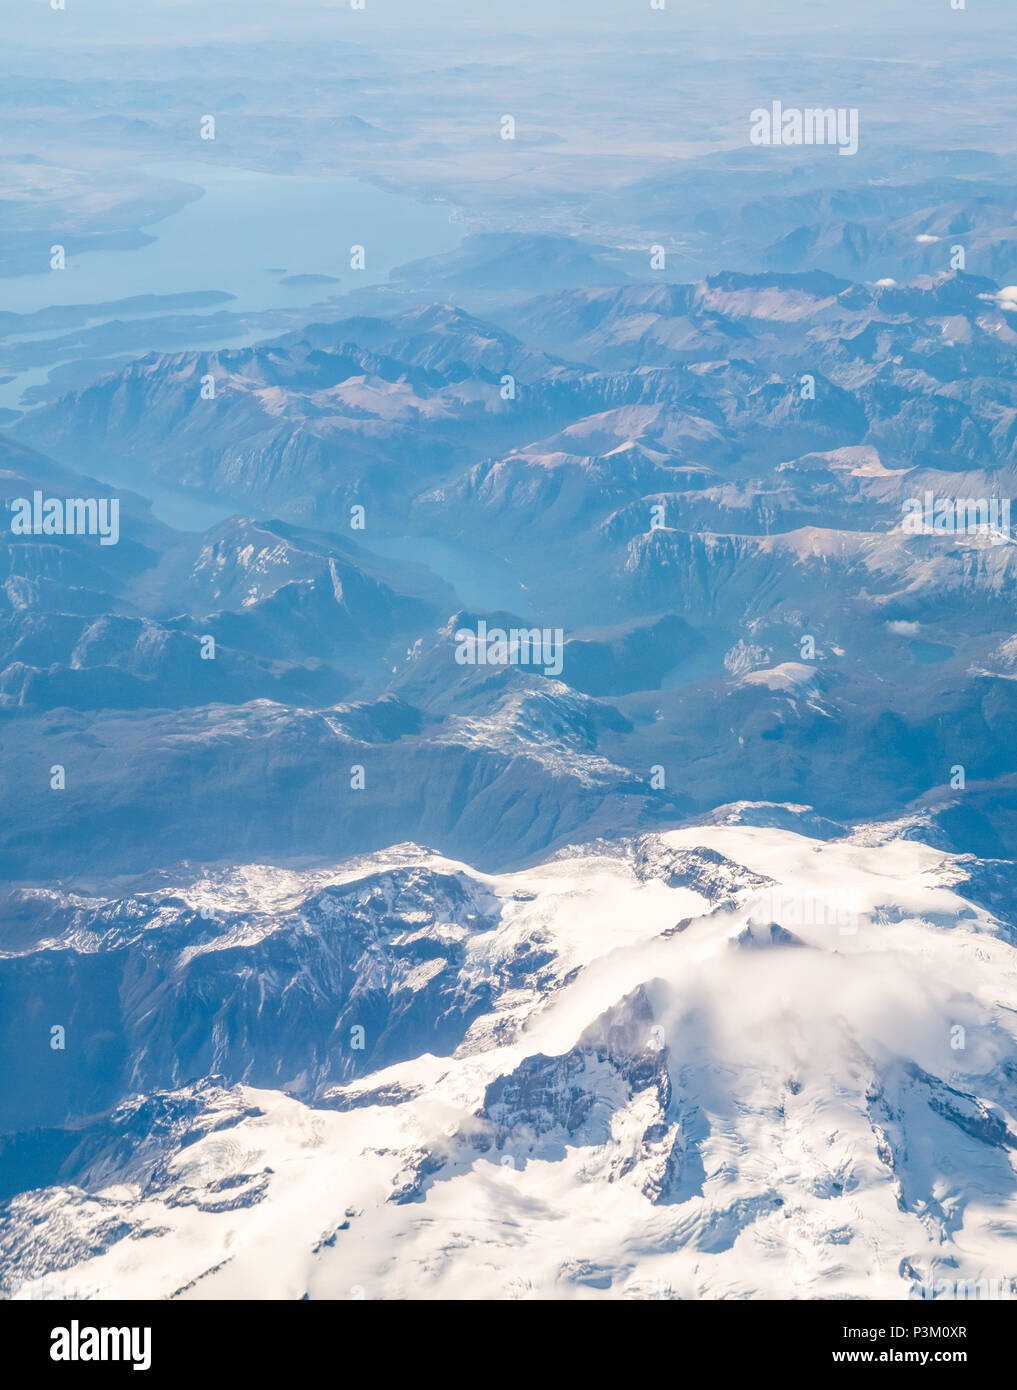 Vista dalla finestra aereo della coperta di neve montagne delle Ande con laghi e ghiacciai, Patagonia meridionale del campo di ghiaccio, Patagonia, Cile, Sud America Foto Stock